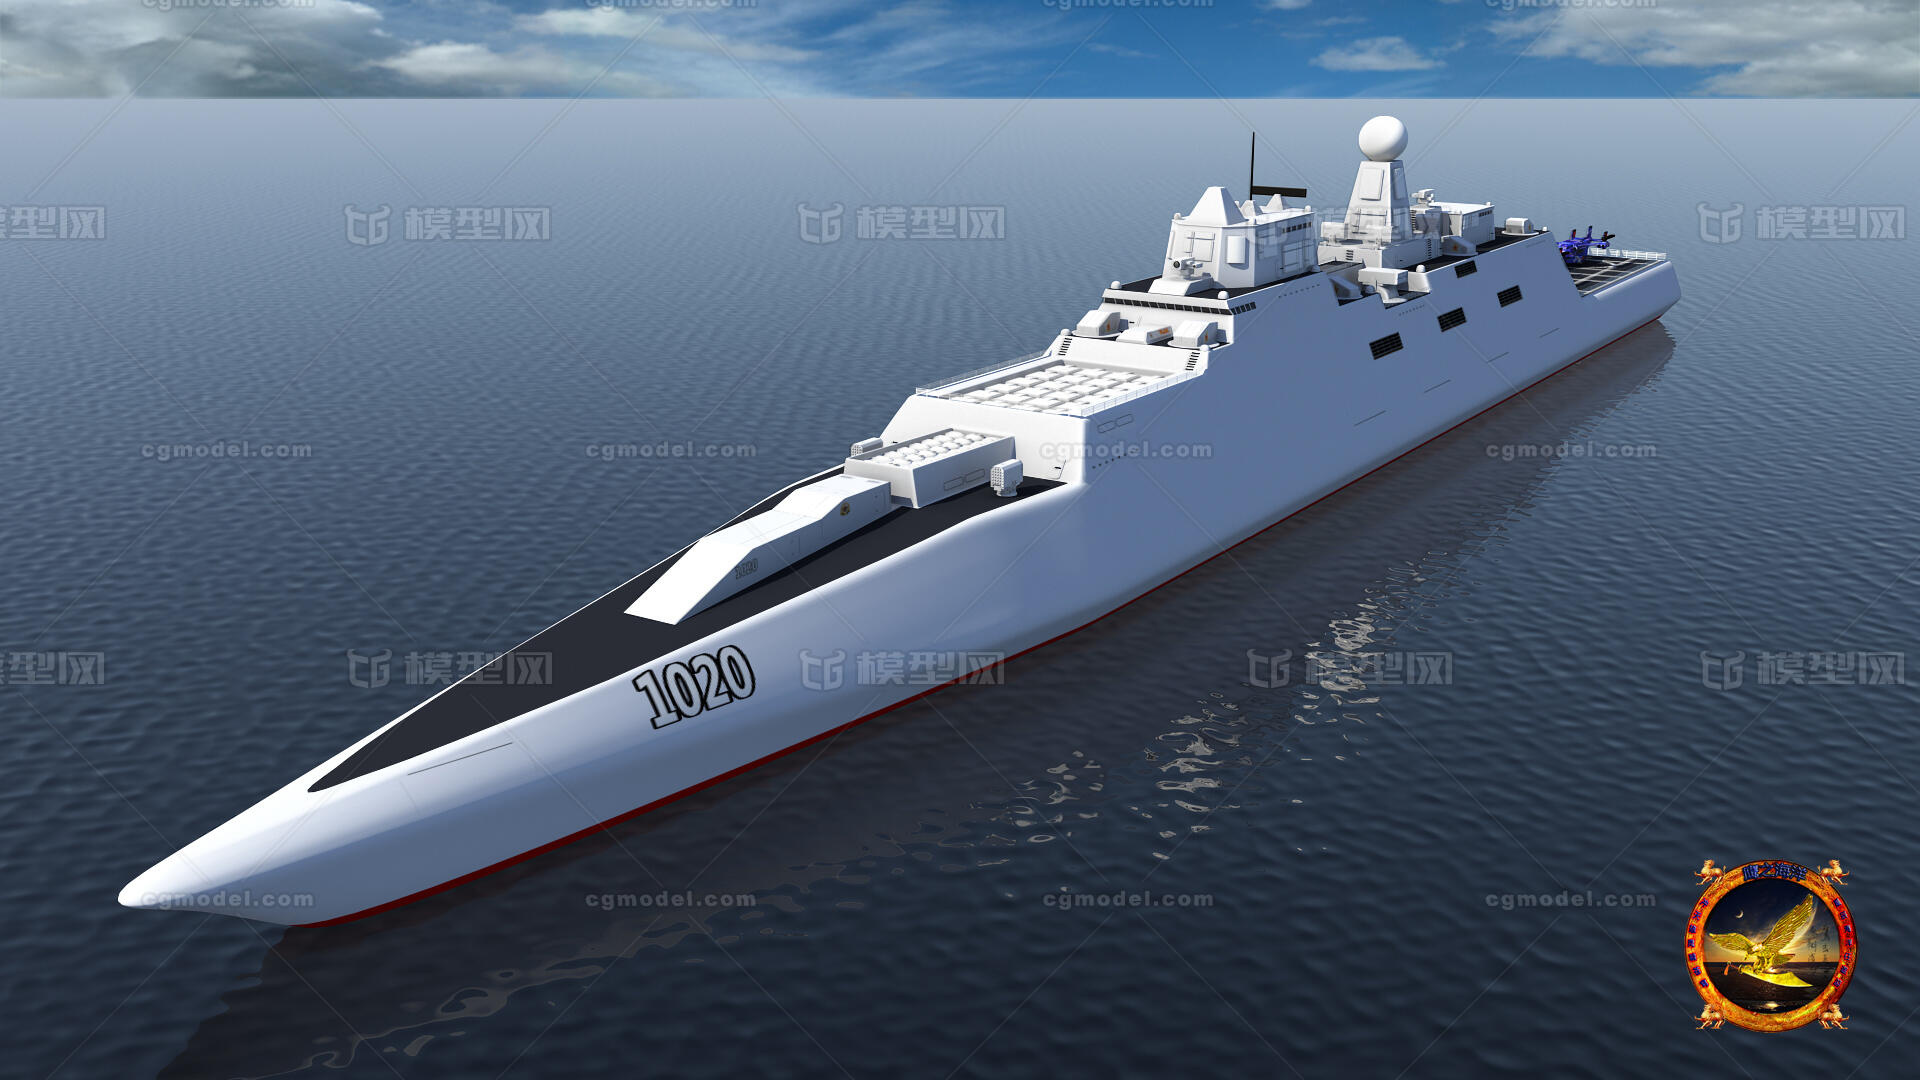 点个赞呗自己设计的未来中国海军核动力巡洋舰,有幸被对岸东森电视台